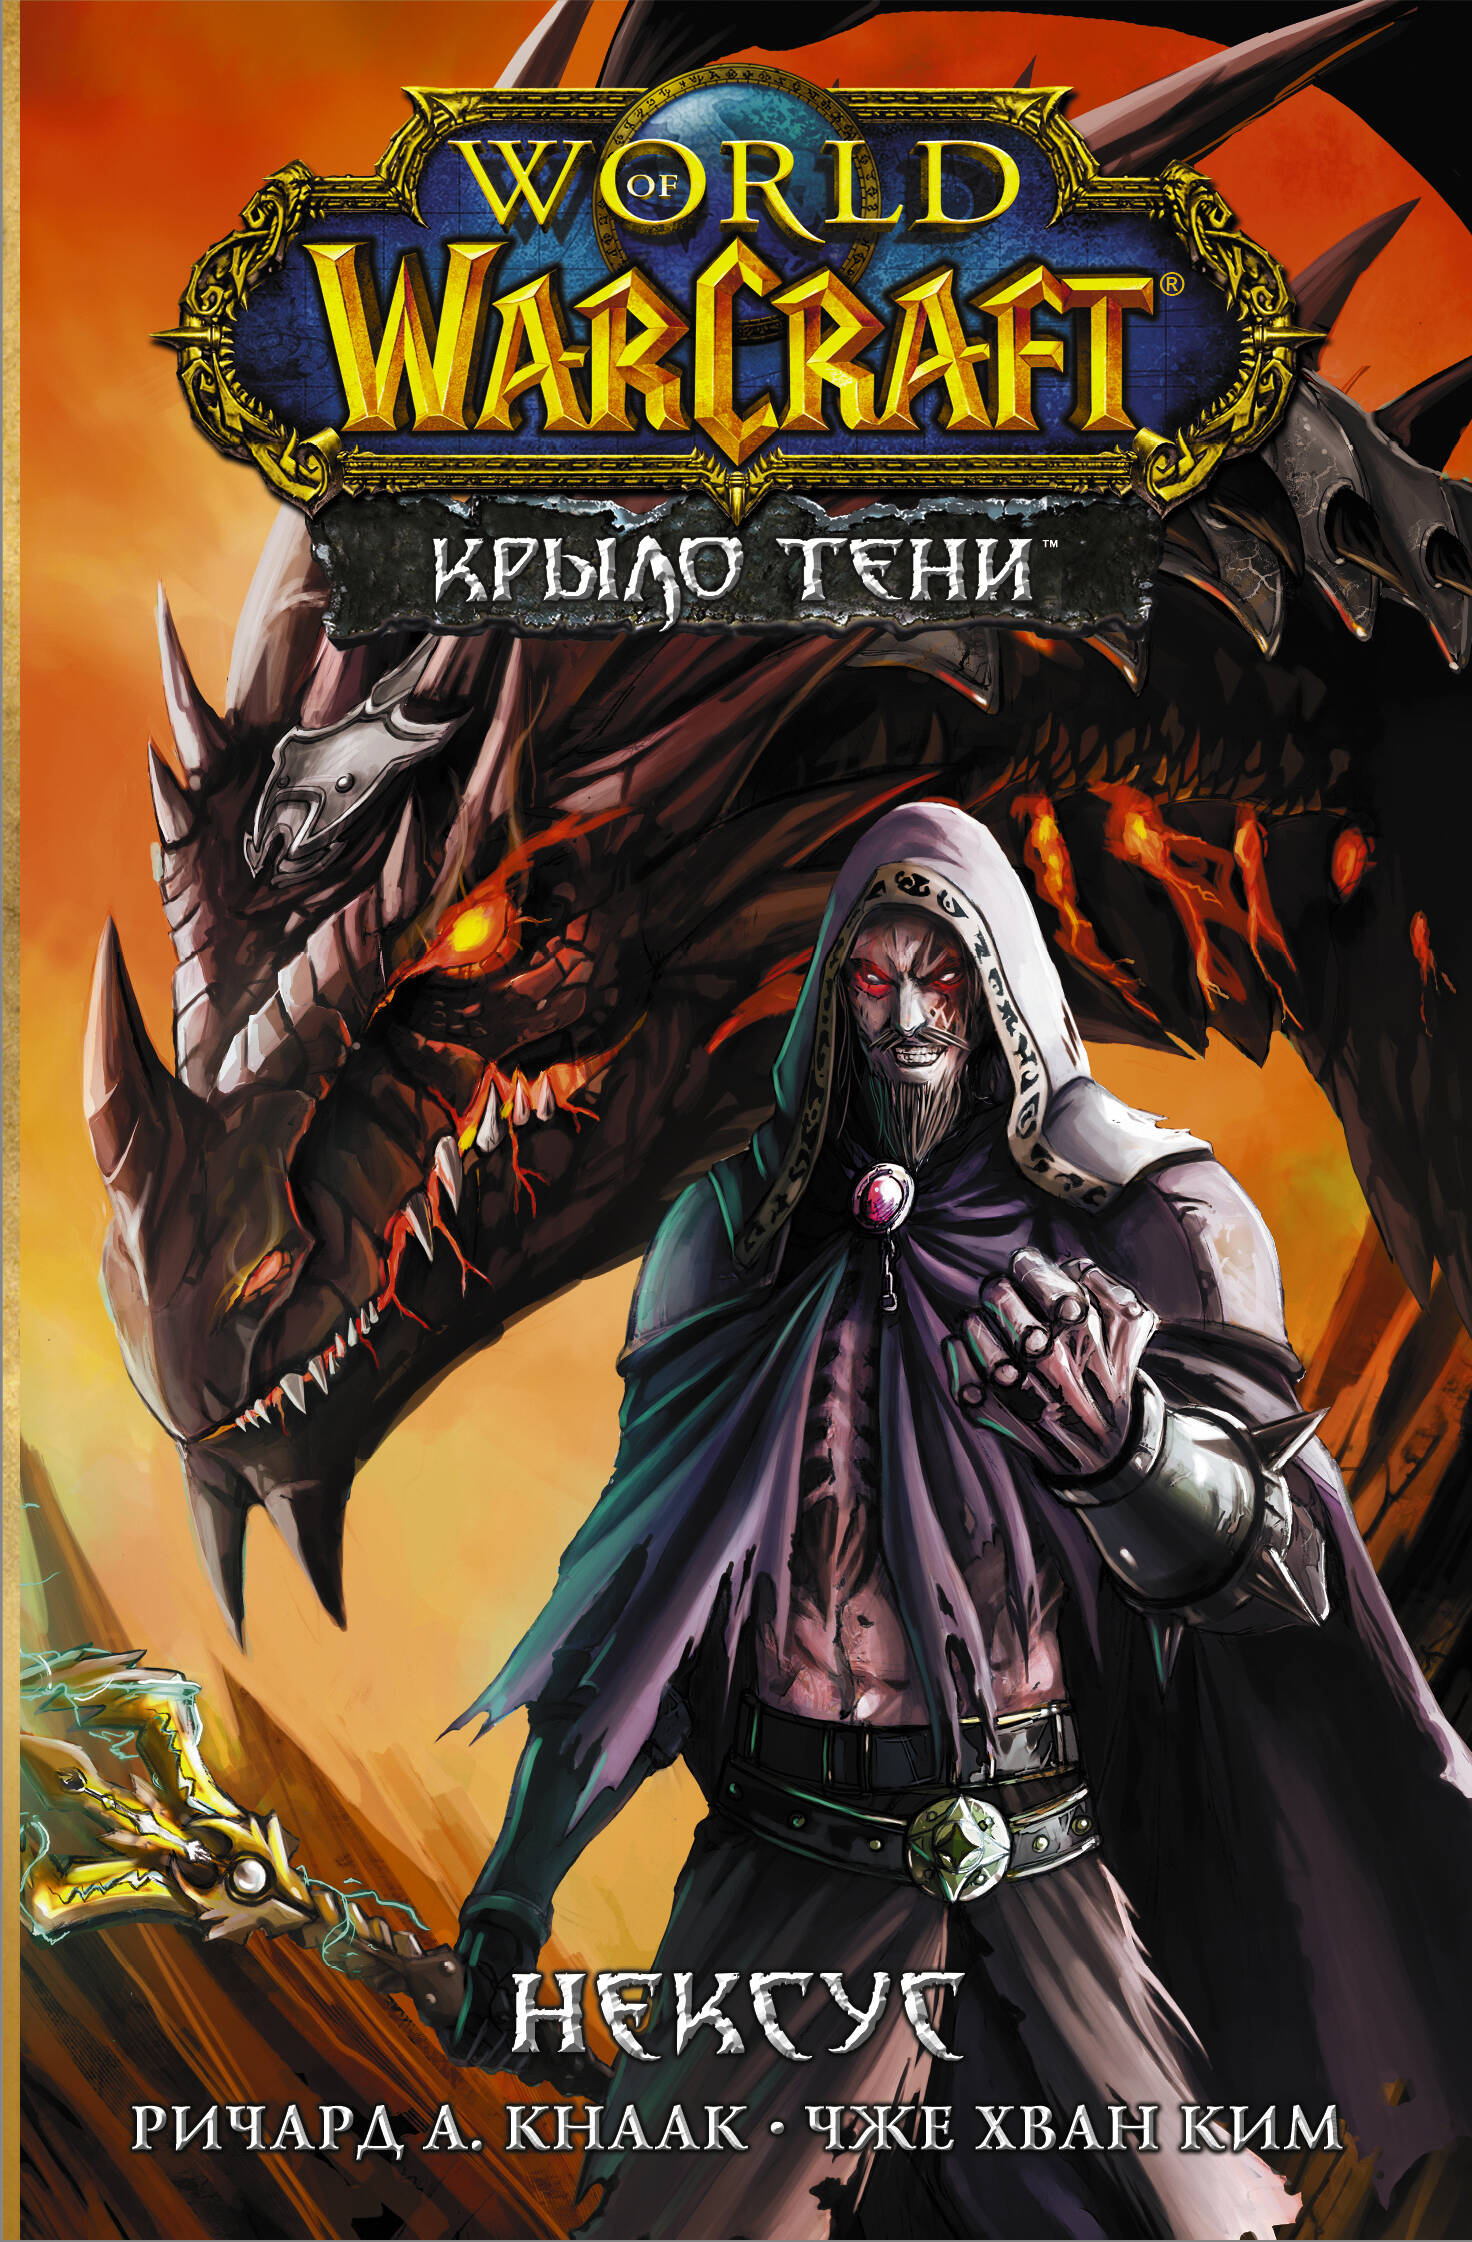 кнаак ричард а world of warcraft крыло тени драконы запределья Кнаак Ричард World of Warcraft. Крыло тени. Нексус